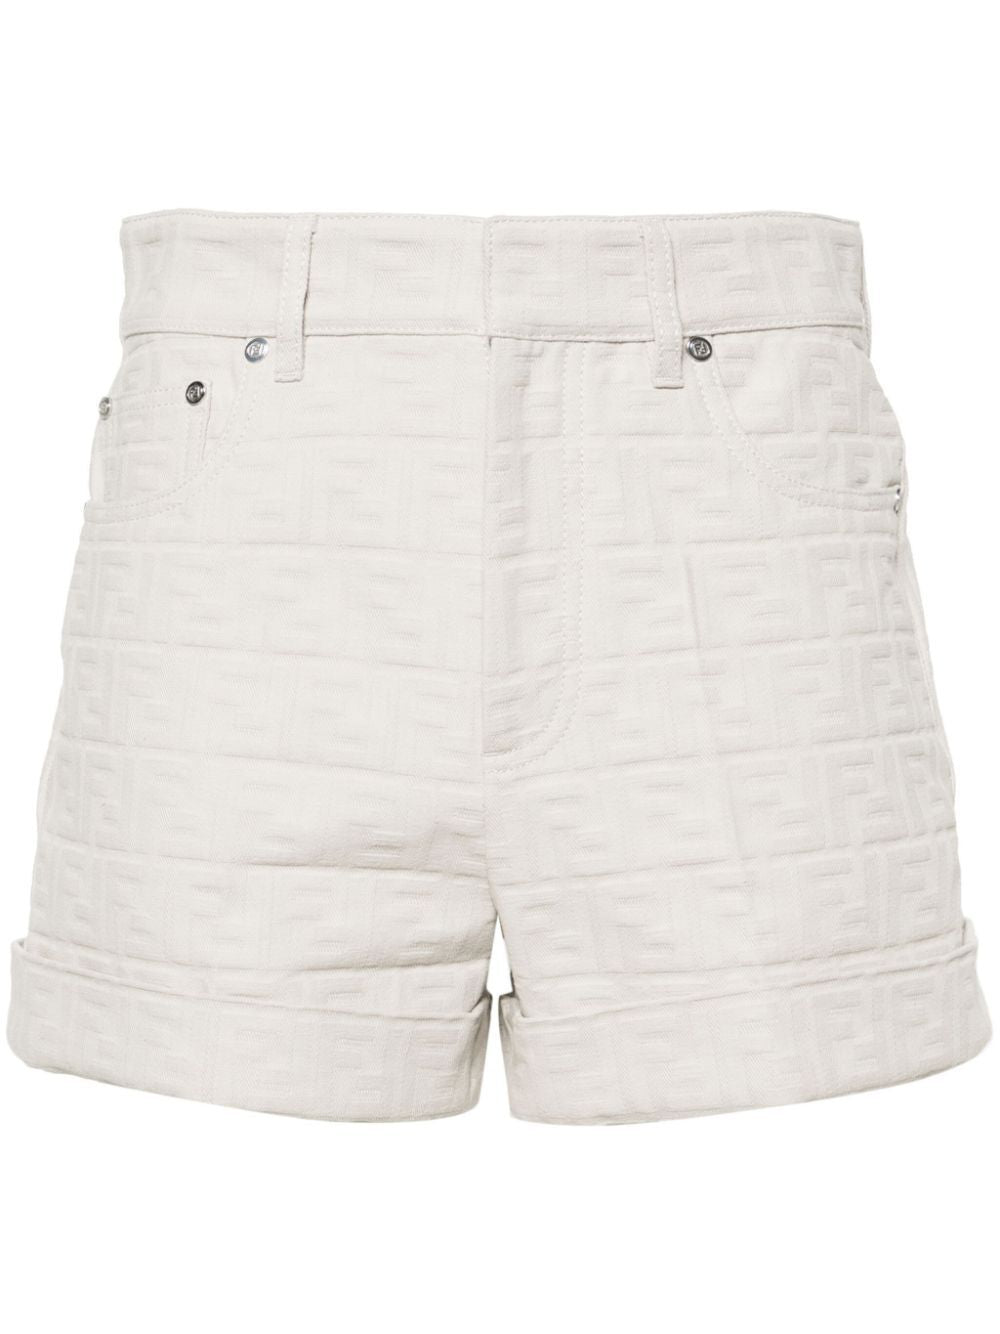 Quần shorts đan tơ tằm màu trắng cho phụ nữ - SS24